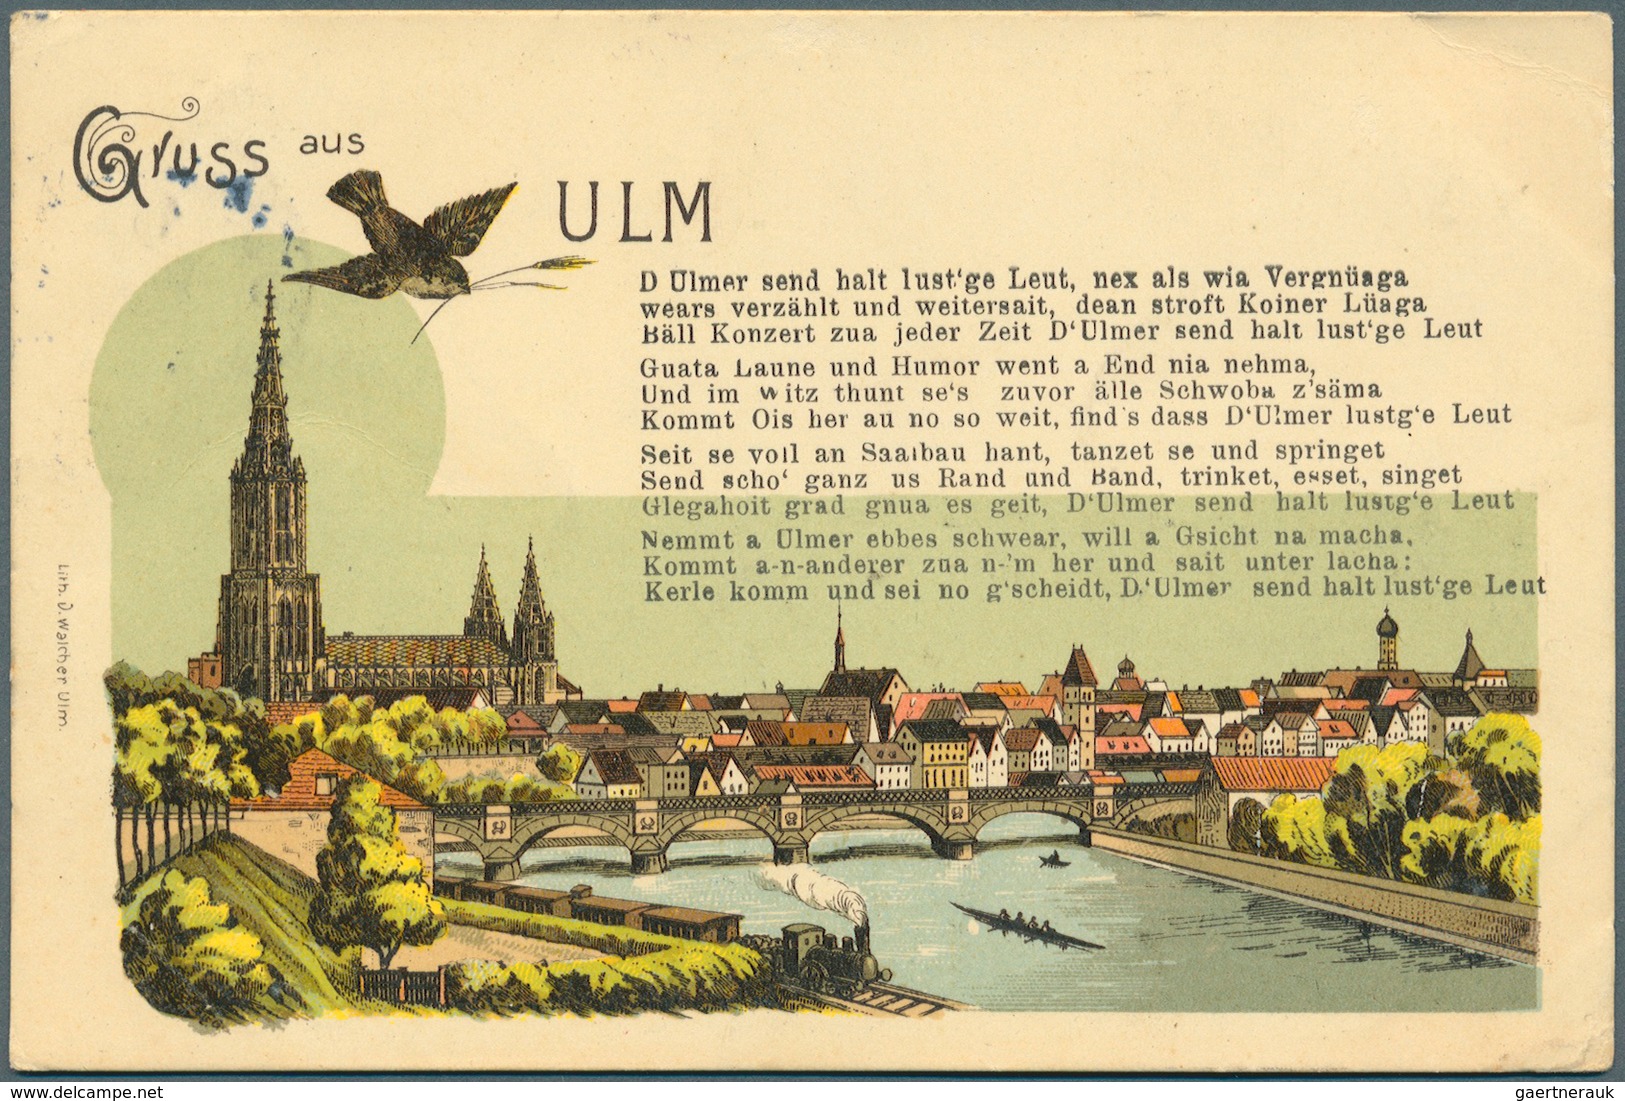 Ansichtskarten: Deutschland: Gigantischer Posten mit weit über 170.000 meist alten Ansichtskarten (c